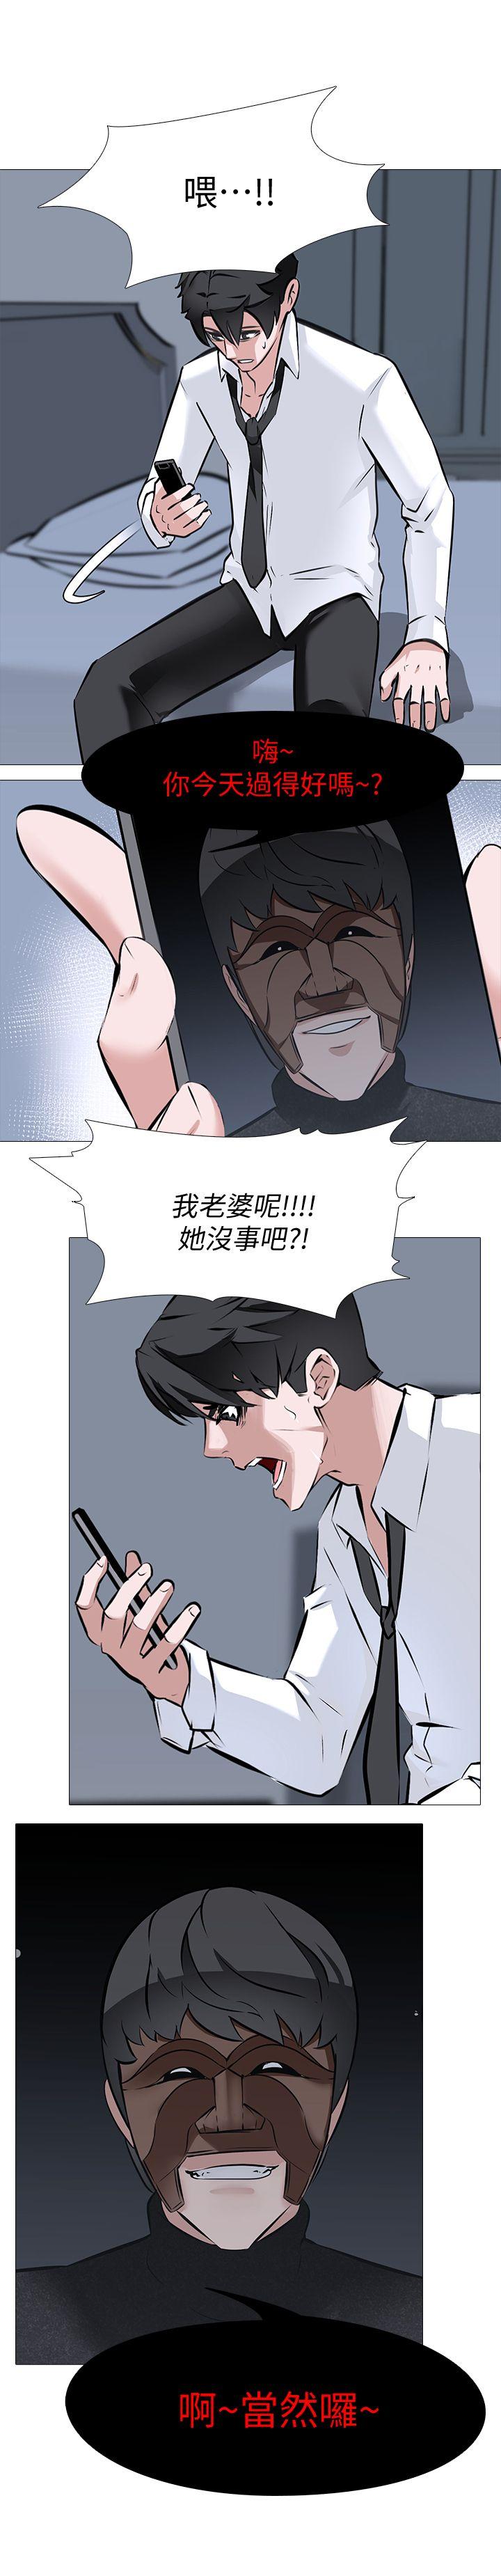 韩国污漫画 虐妻遊戲 第7话-心碎的眼泪 7